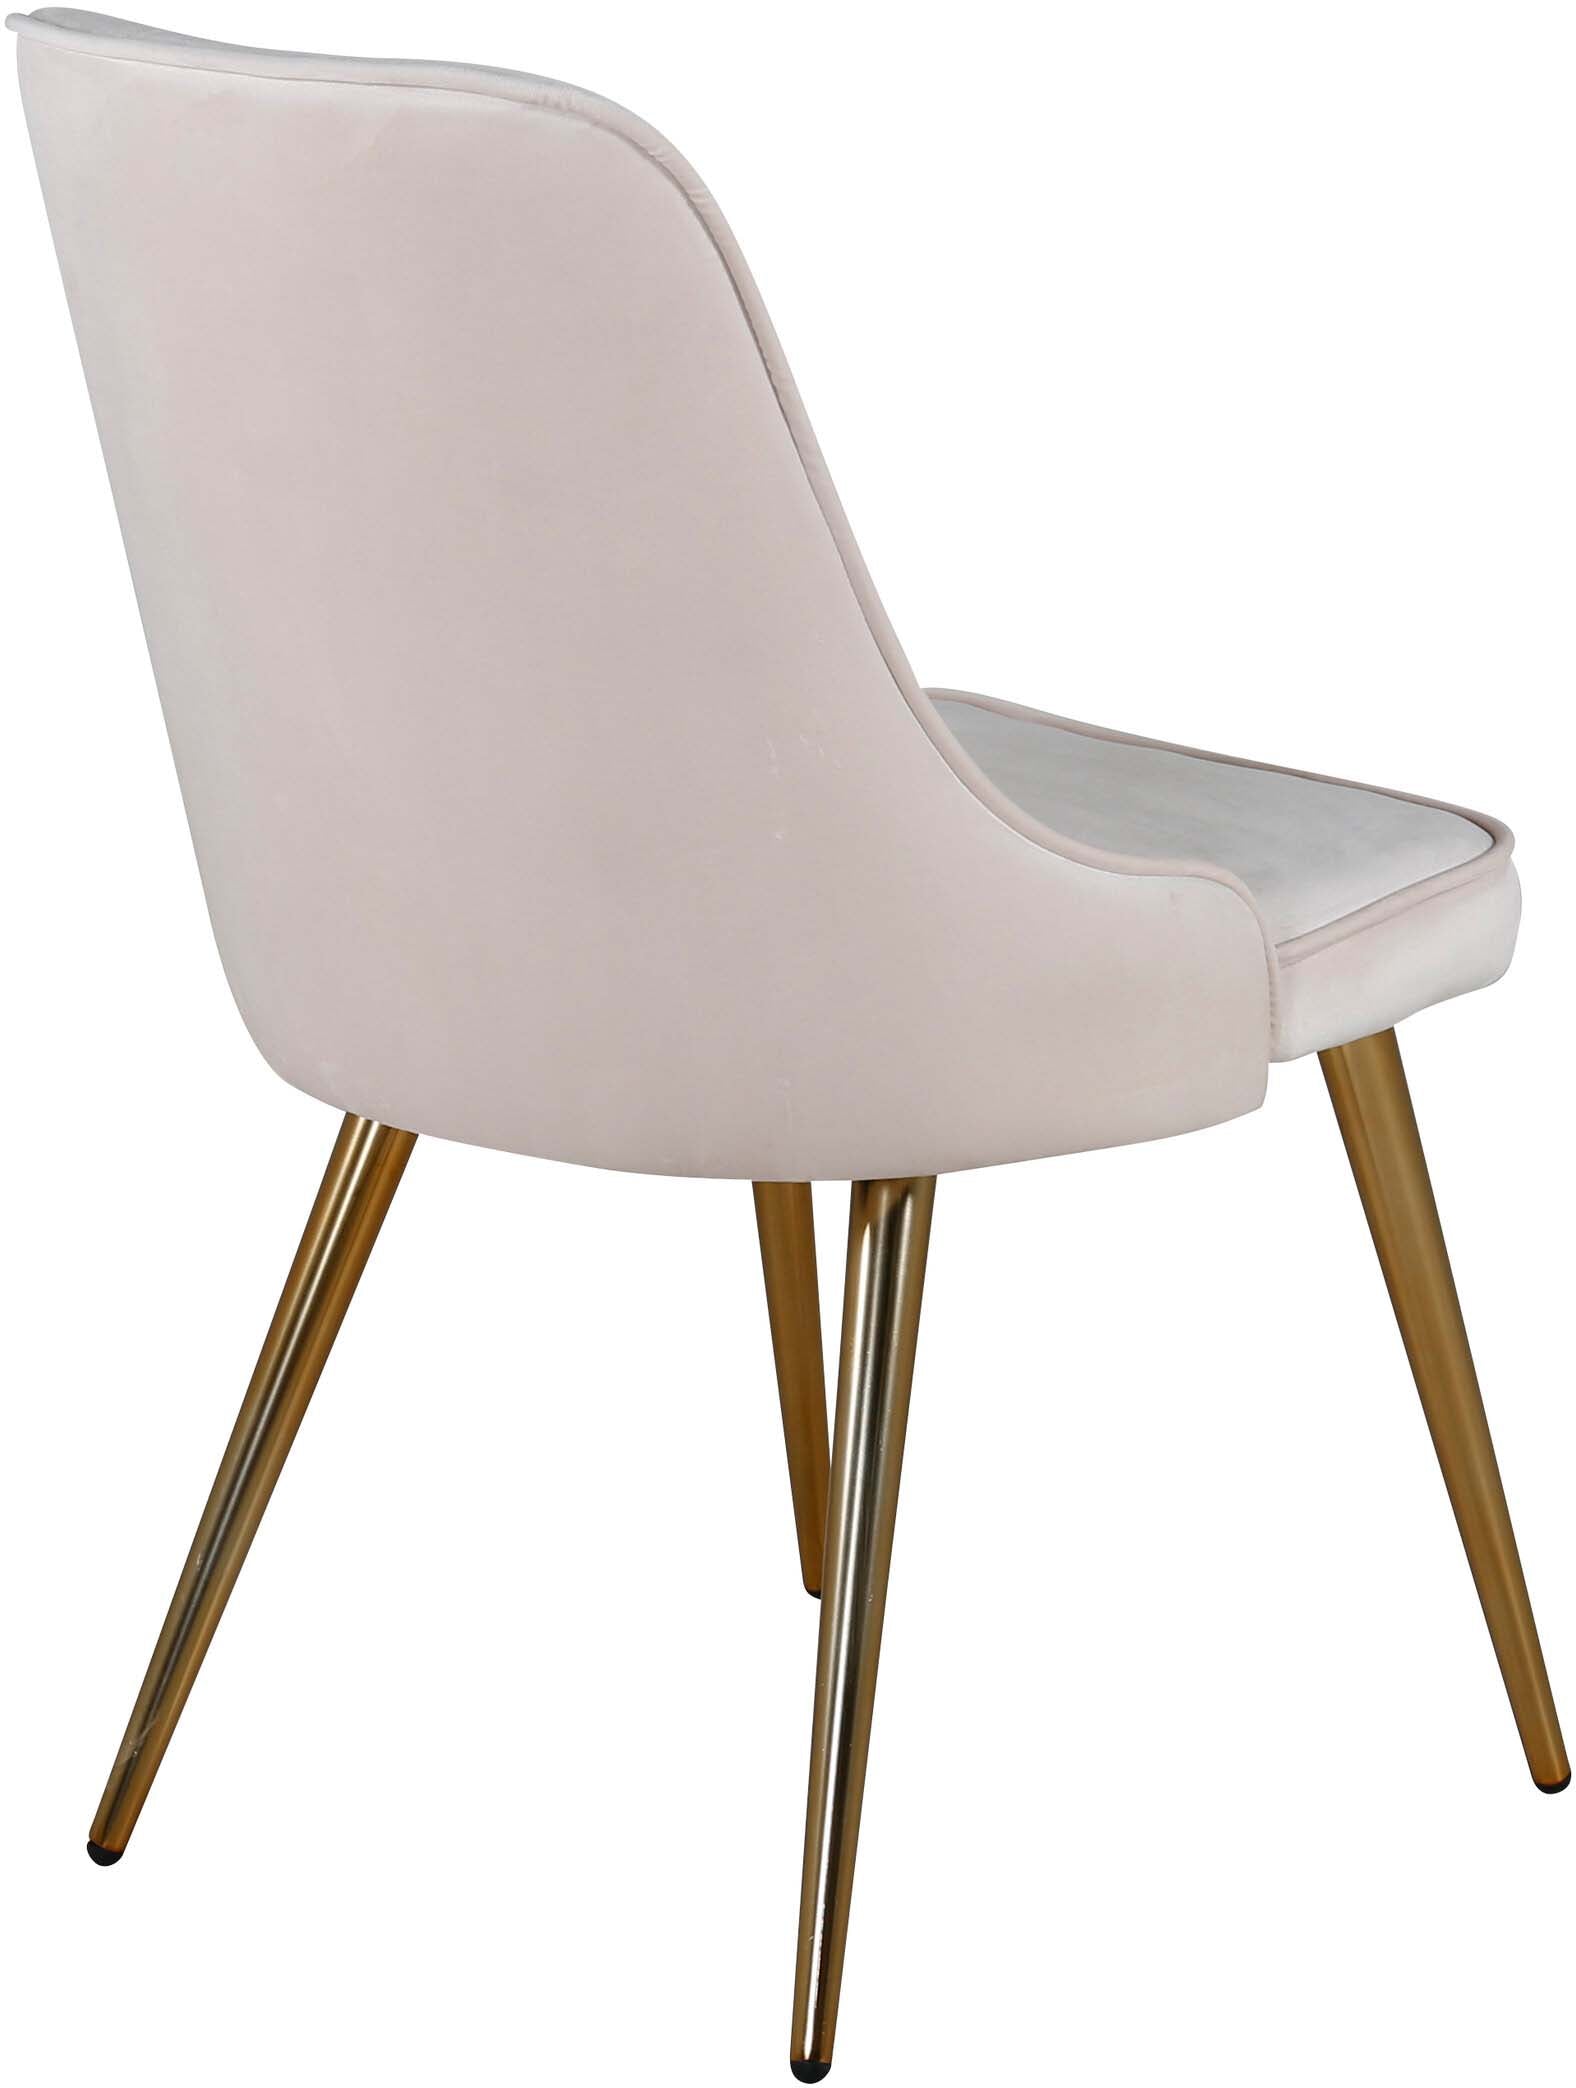 Velvet Deluxe Stuhl in Beige / Gold präsentiert im Onlineshop von KAQTU Design AG. Stuhl ist von Venture Home